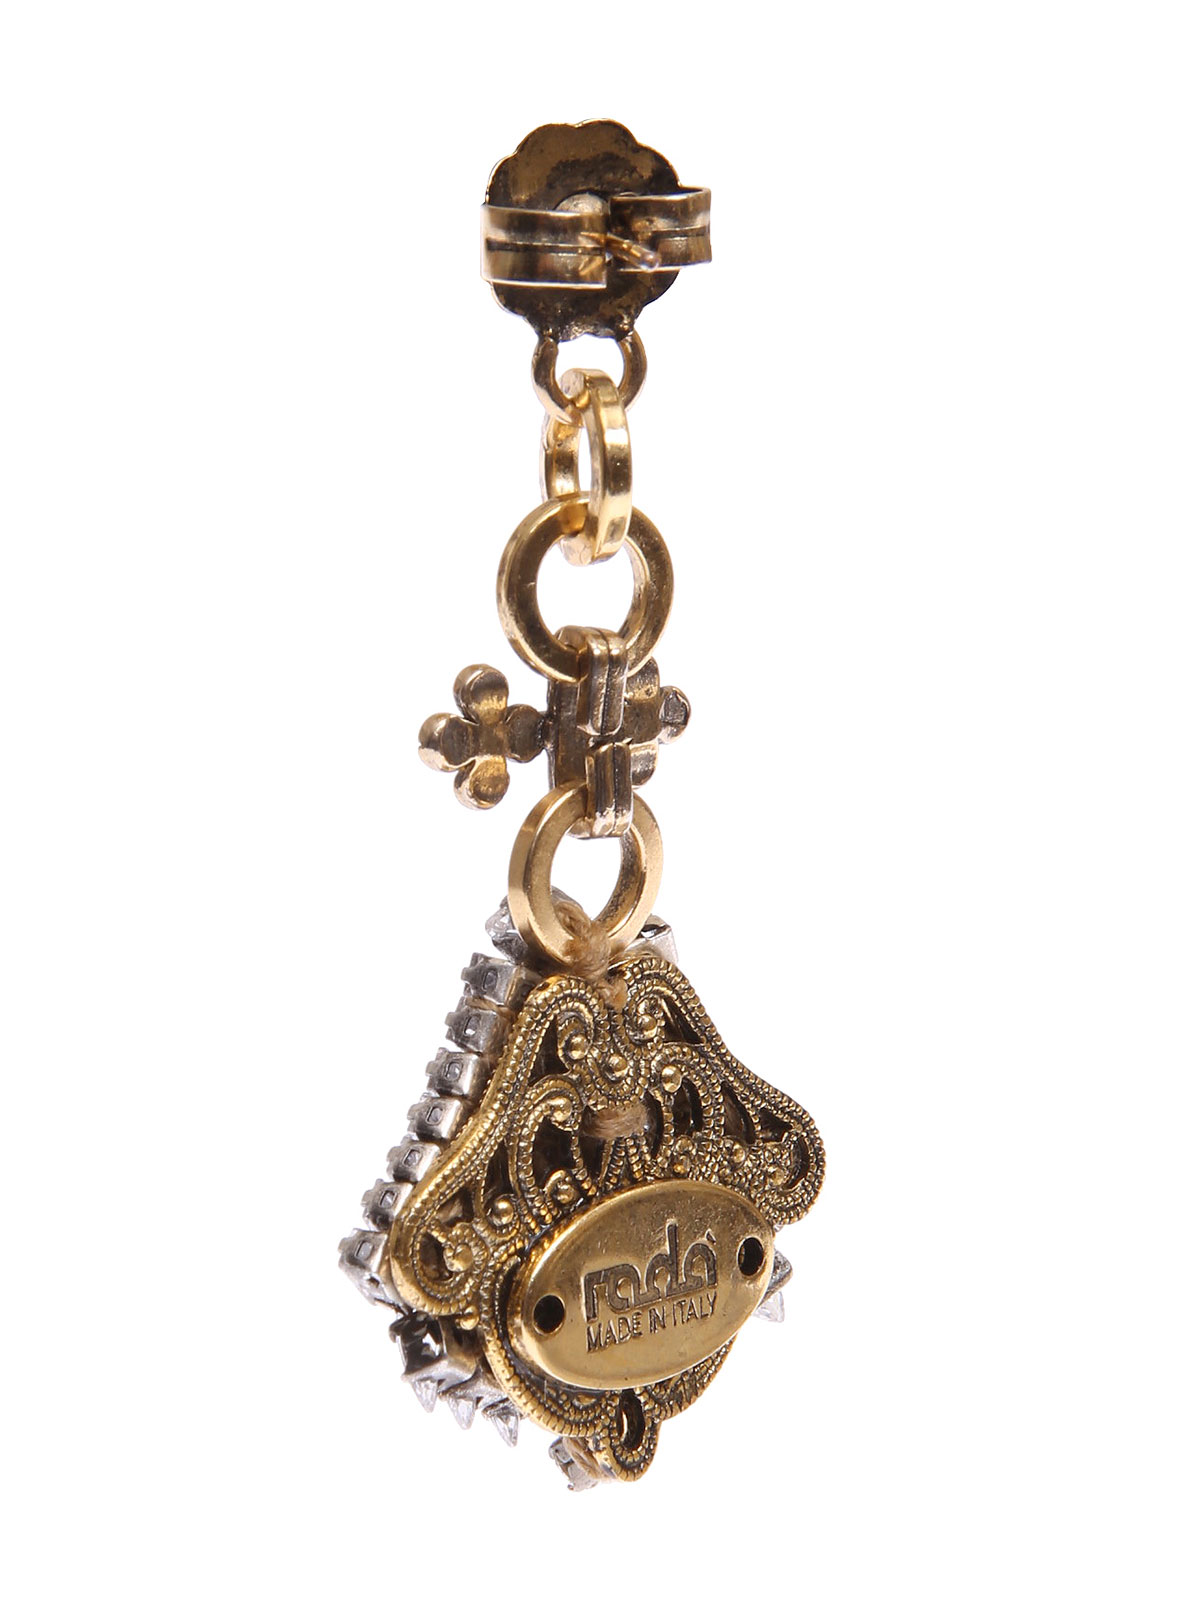 Stone earrings with jewel fan pendant 